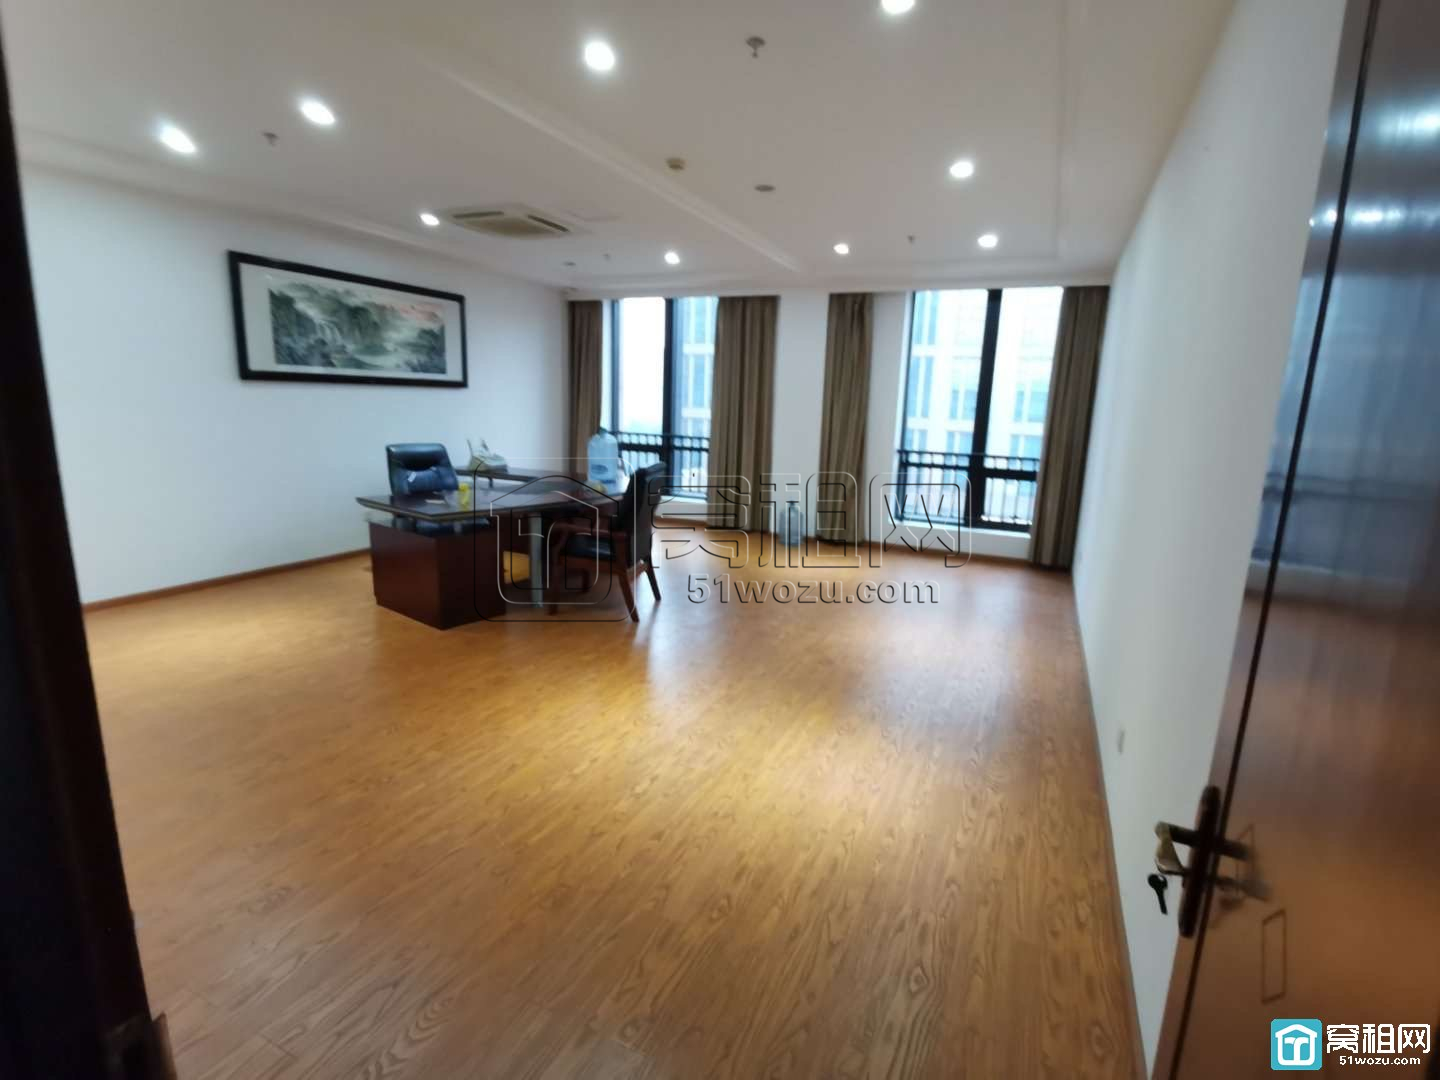 宁波高新区研发园区5楼一套面积55平米办公室出租(图4)